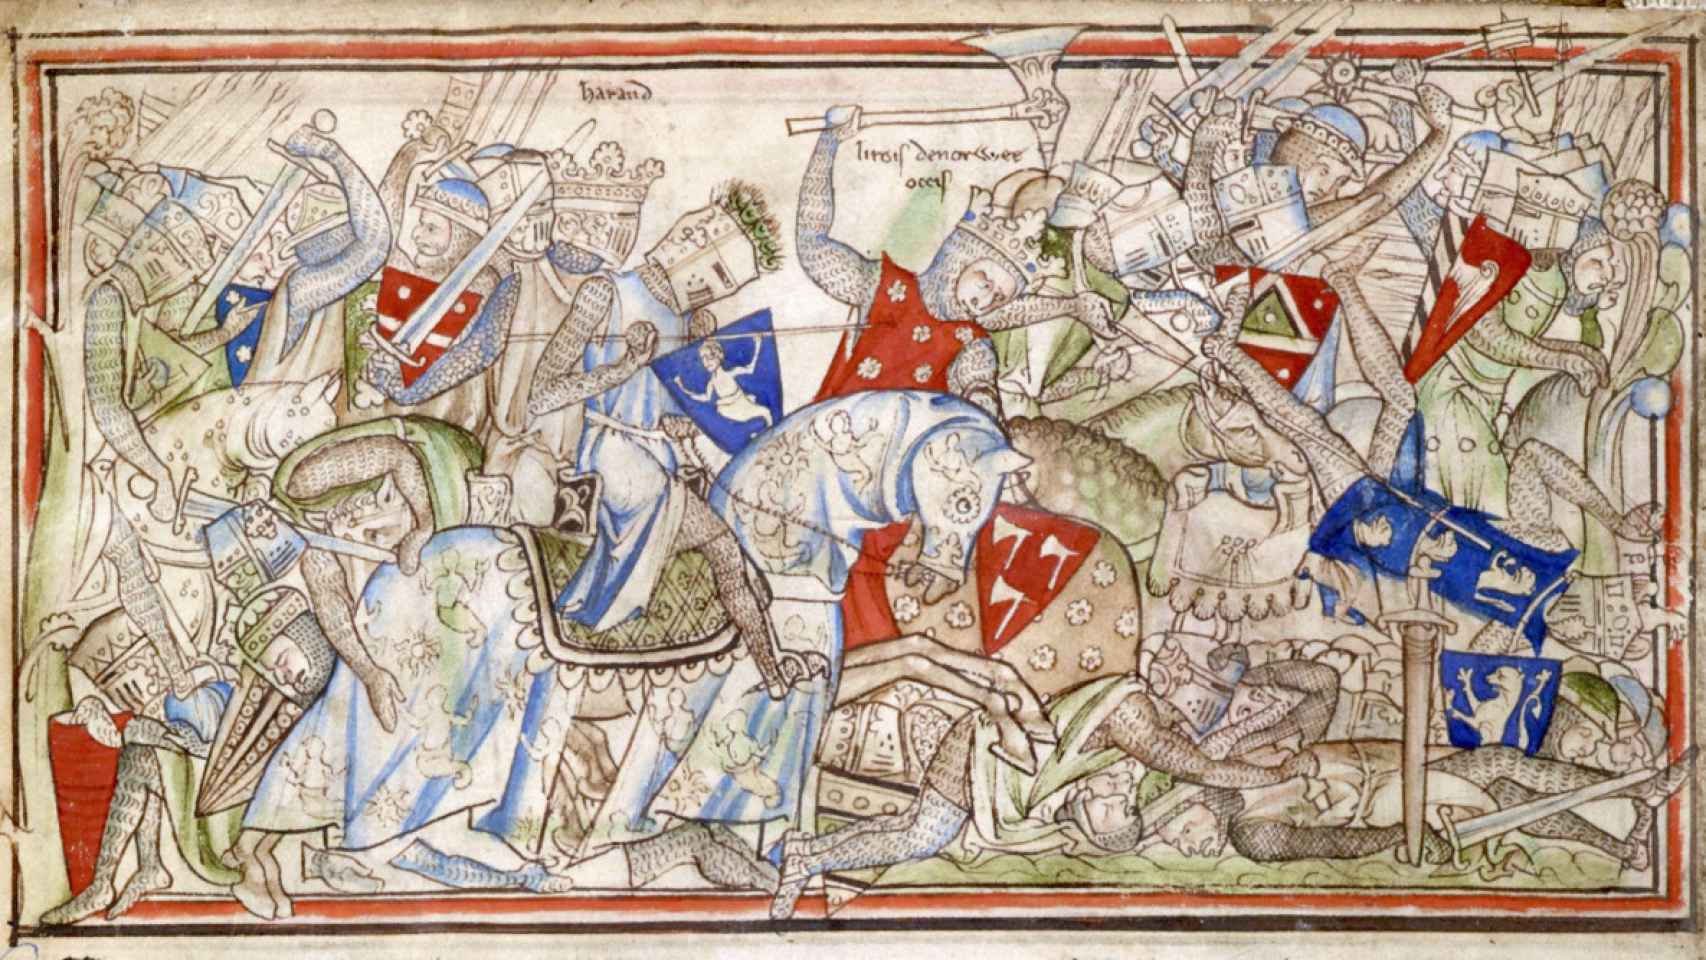 Muerte del rey Harald (centro) en la batalla de Stamford Bridge de 1066. Inglaterra s. XIII